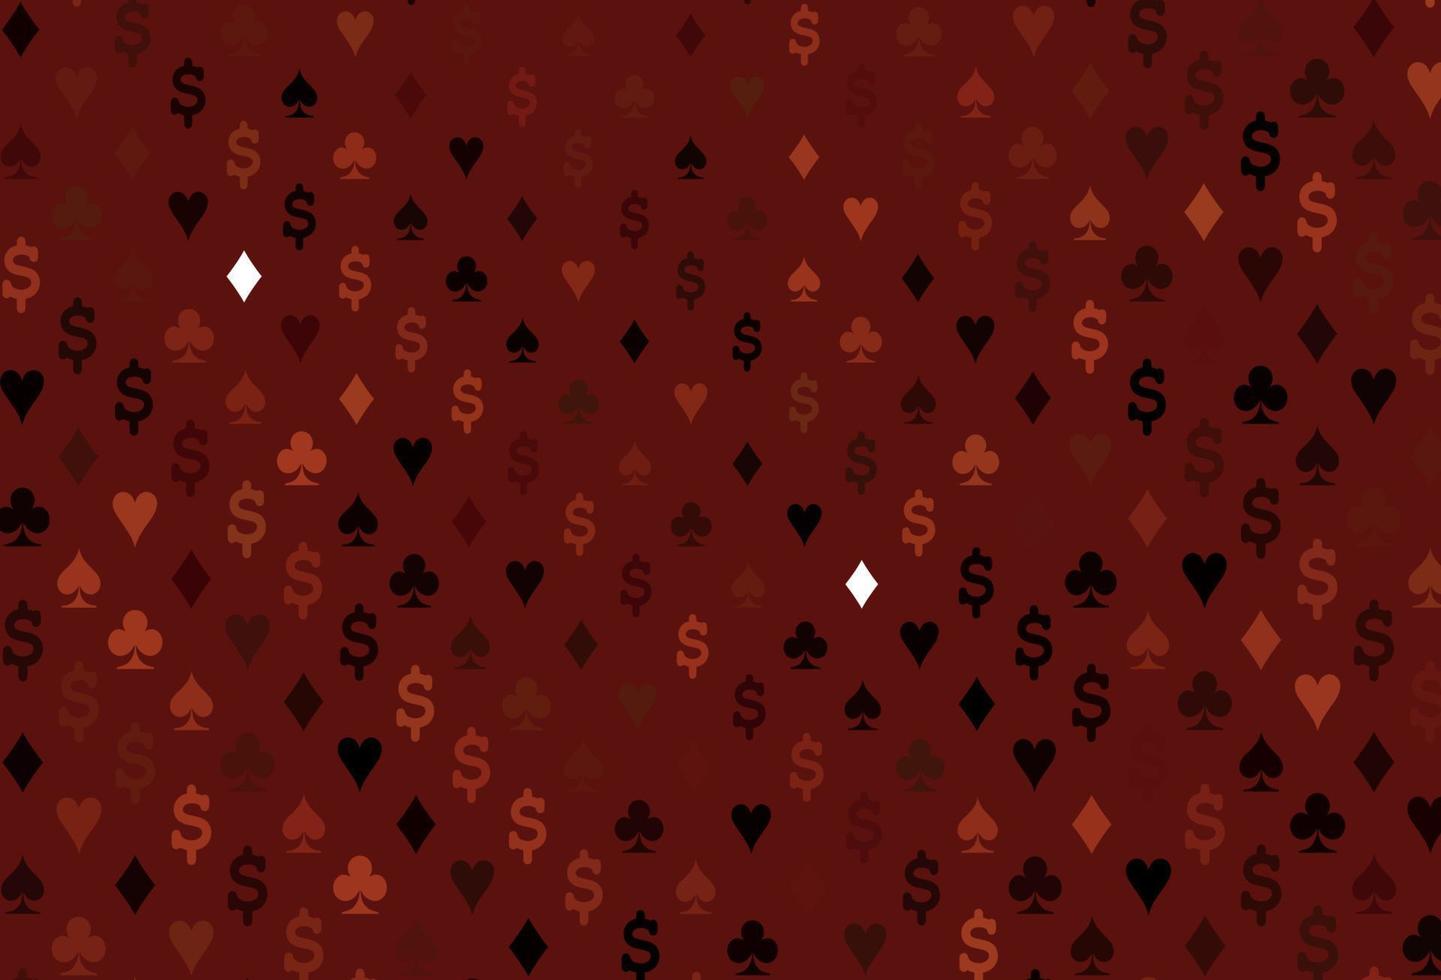 trama vettoriale rosso scuro con carte da gioco.